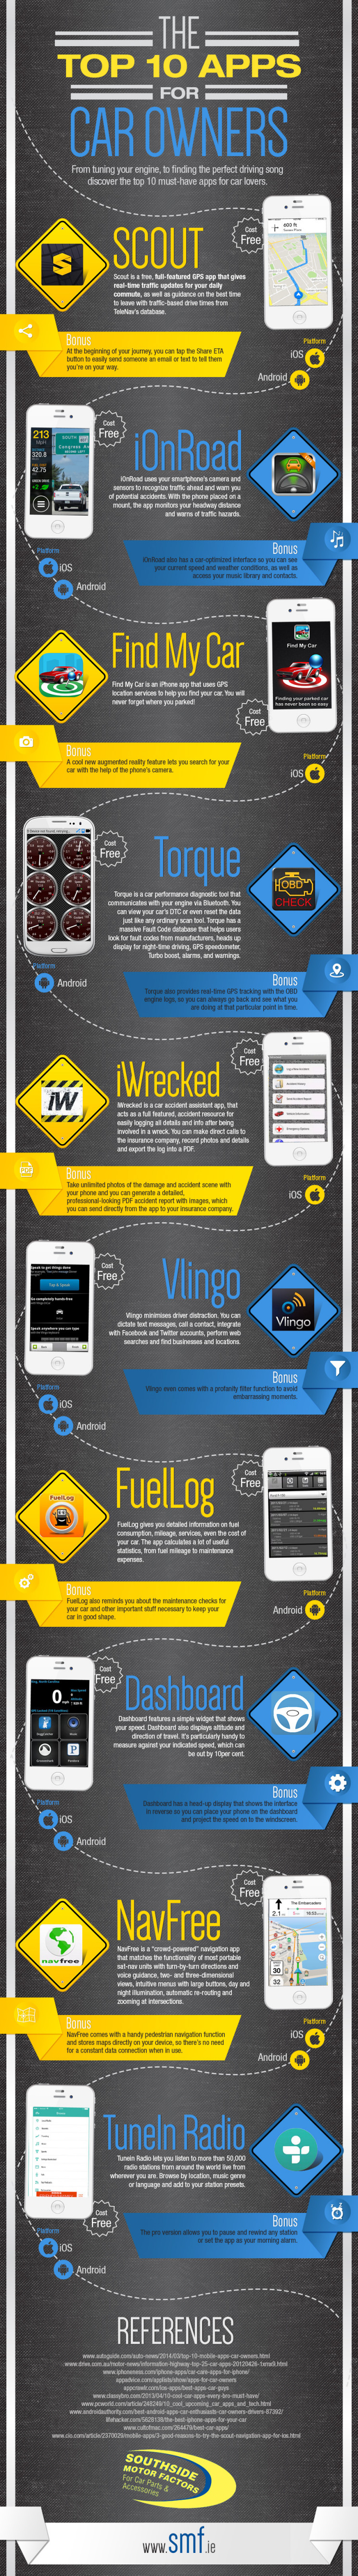 infografia-apps-utiles-coche